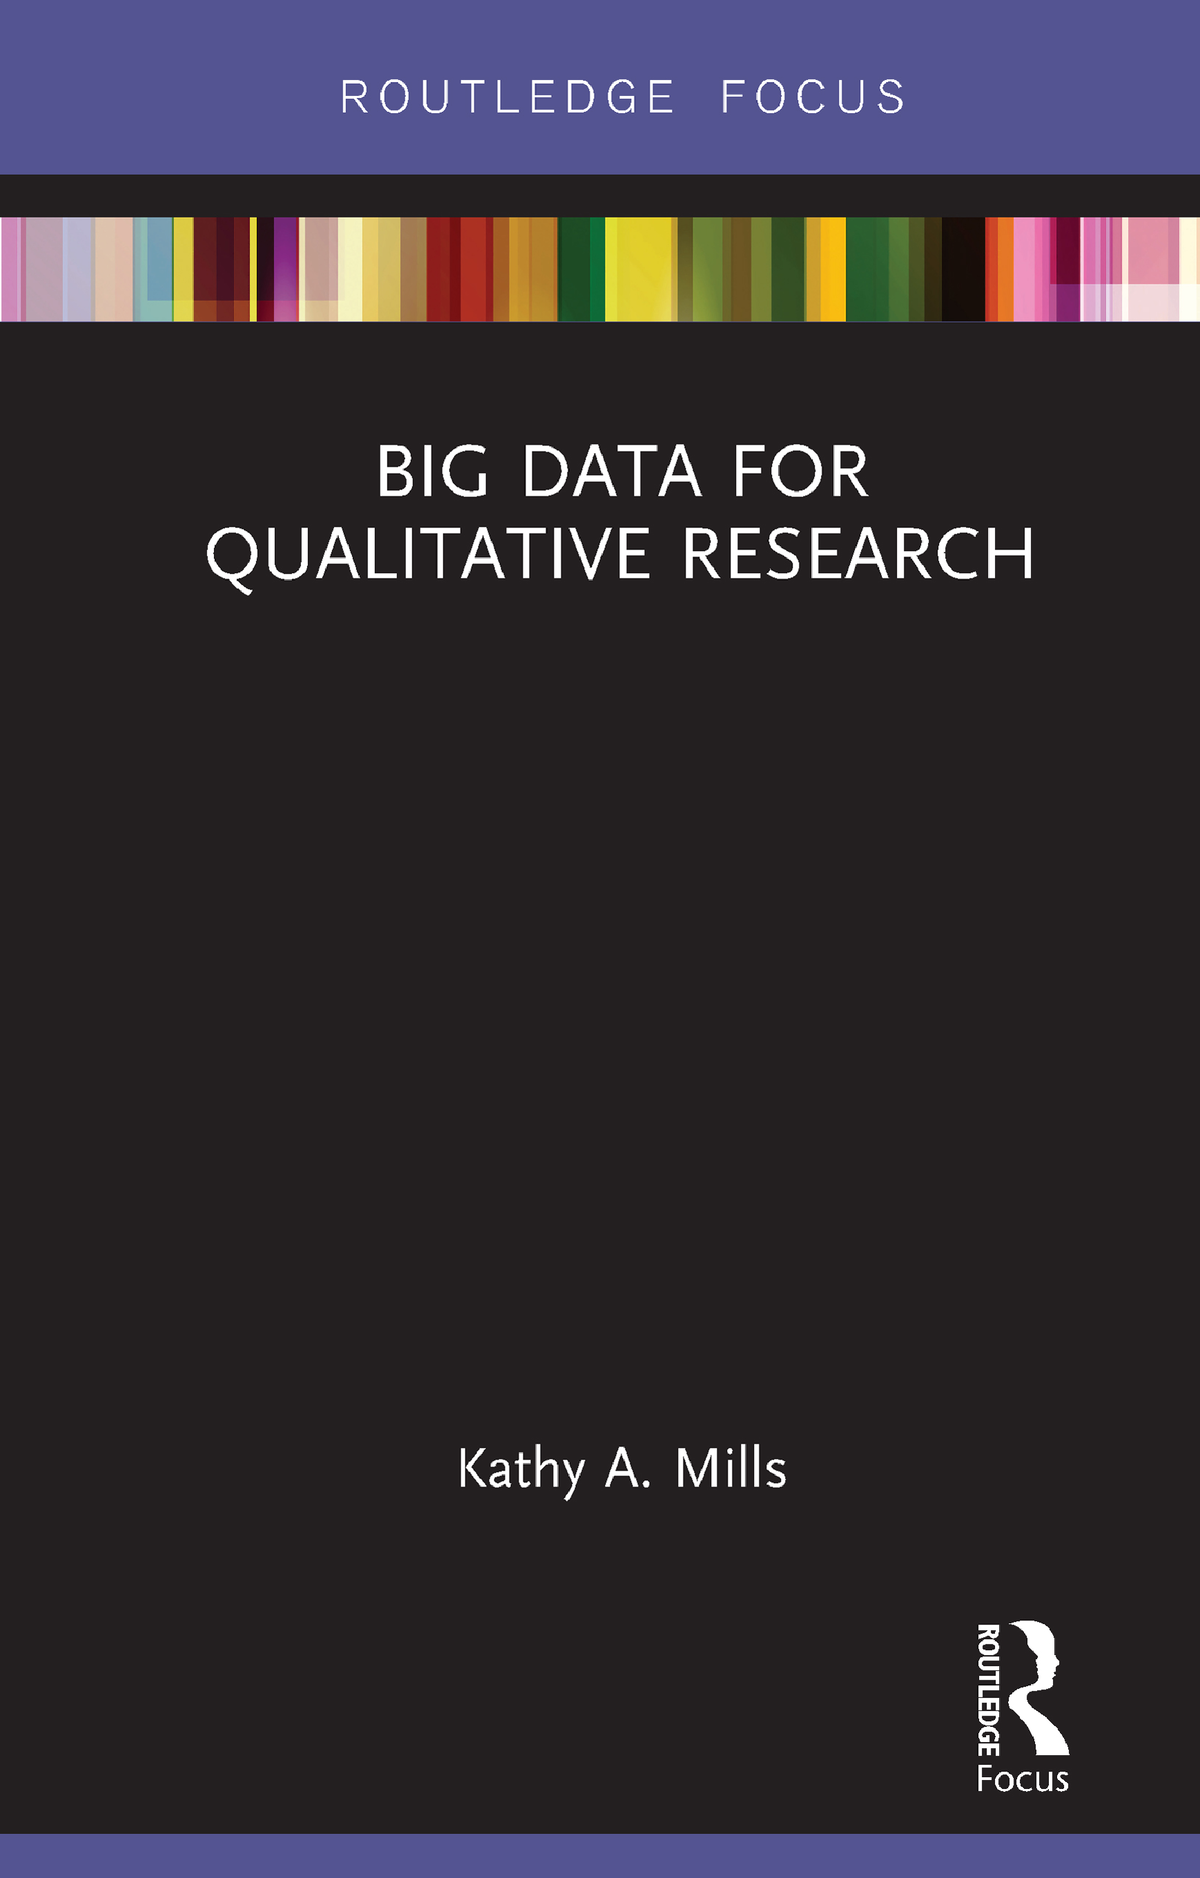 qualitative research 2019